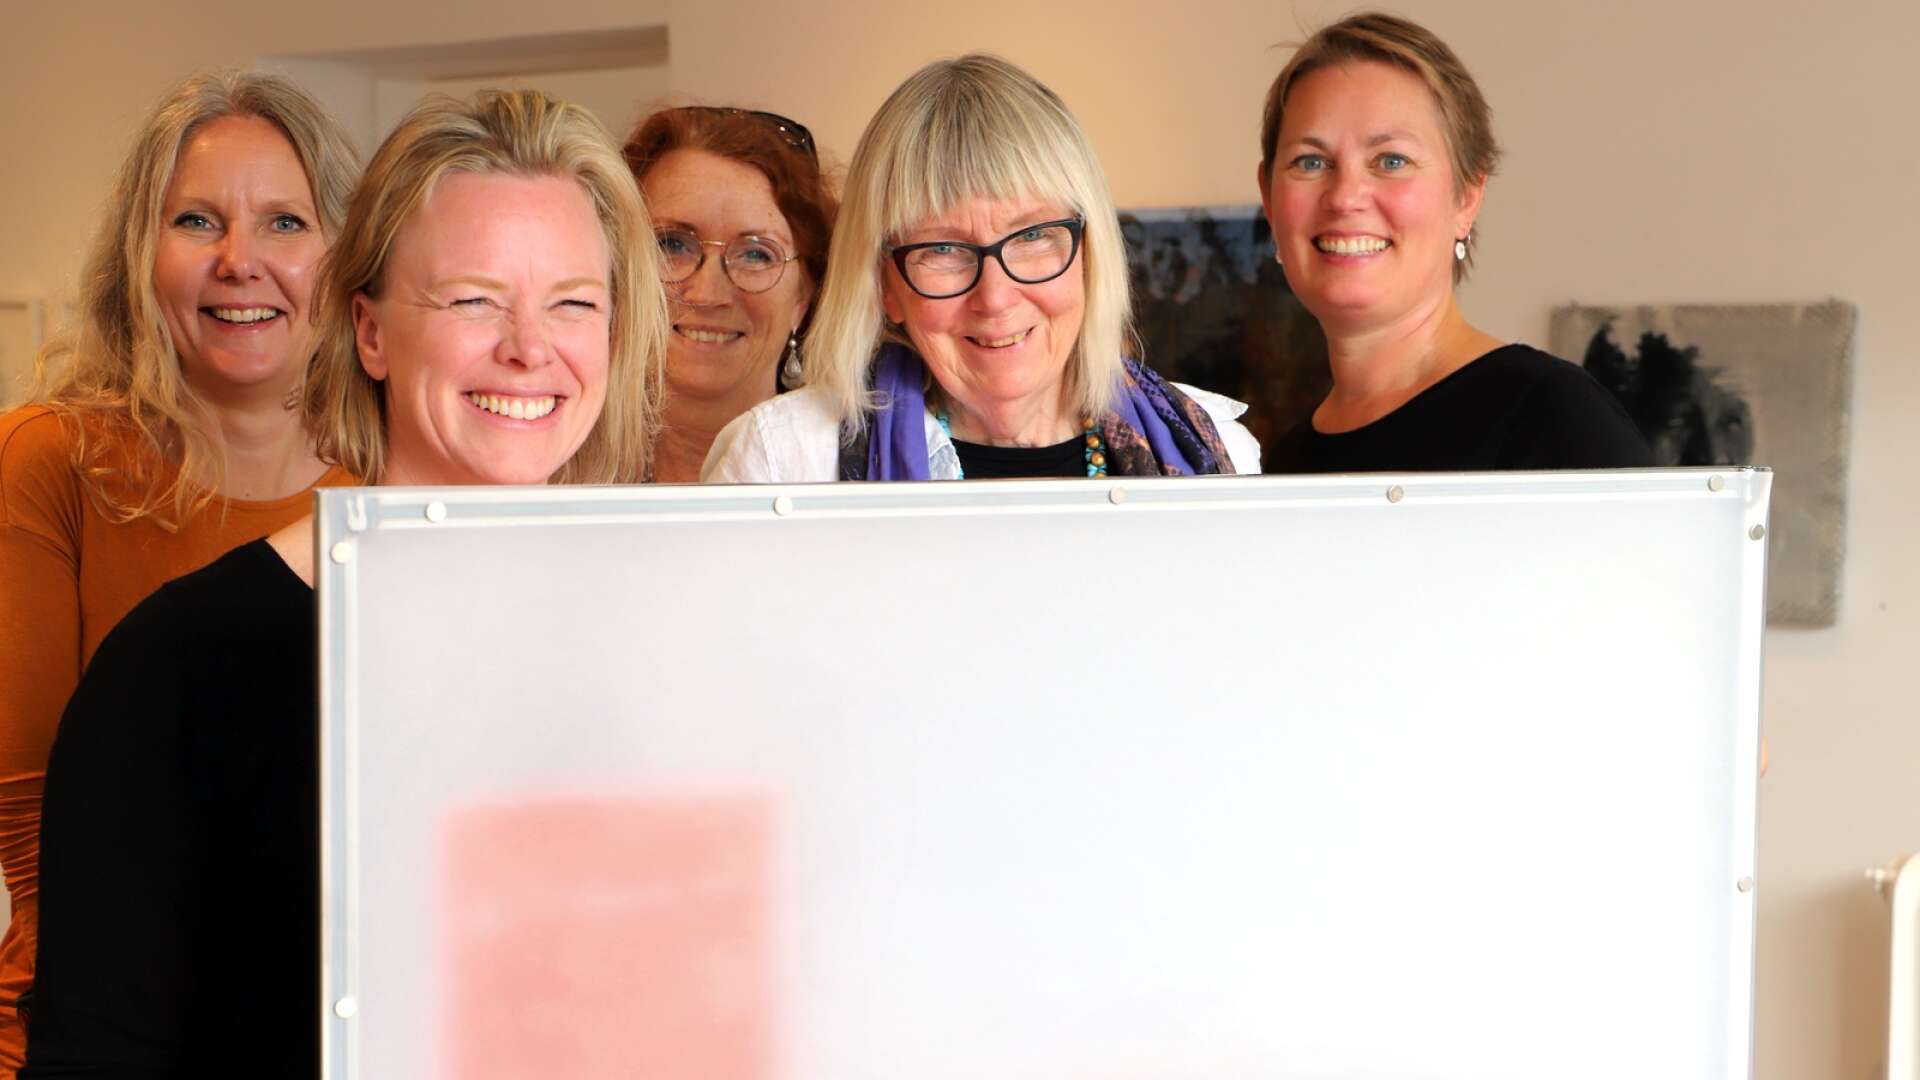 Tio konstnärer på färgstark utställning i Karlstad